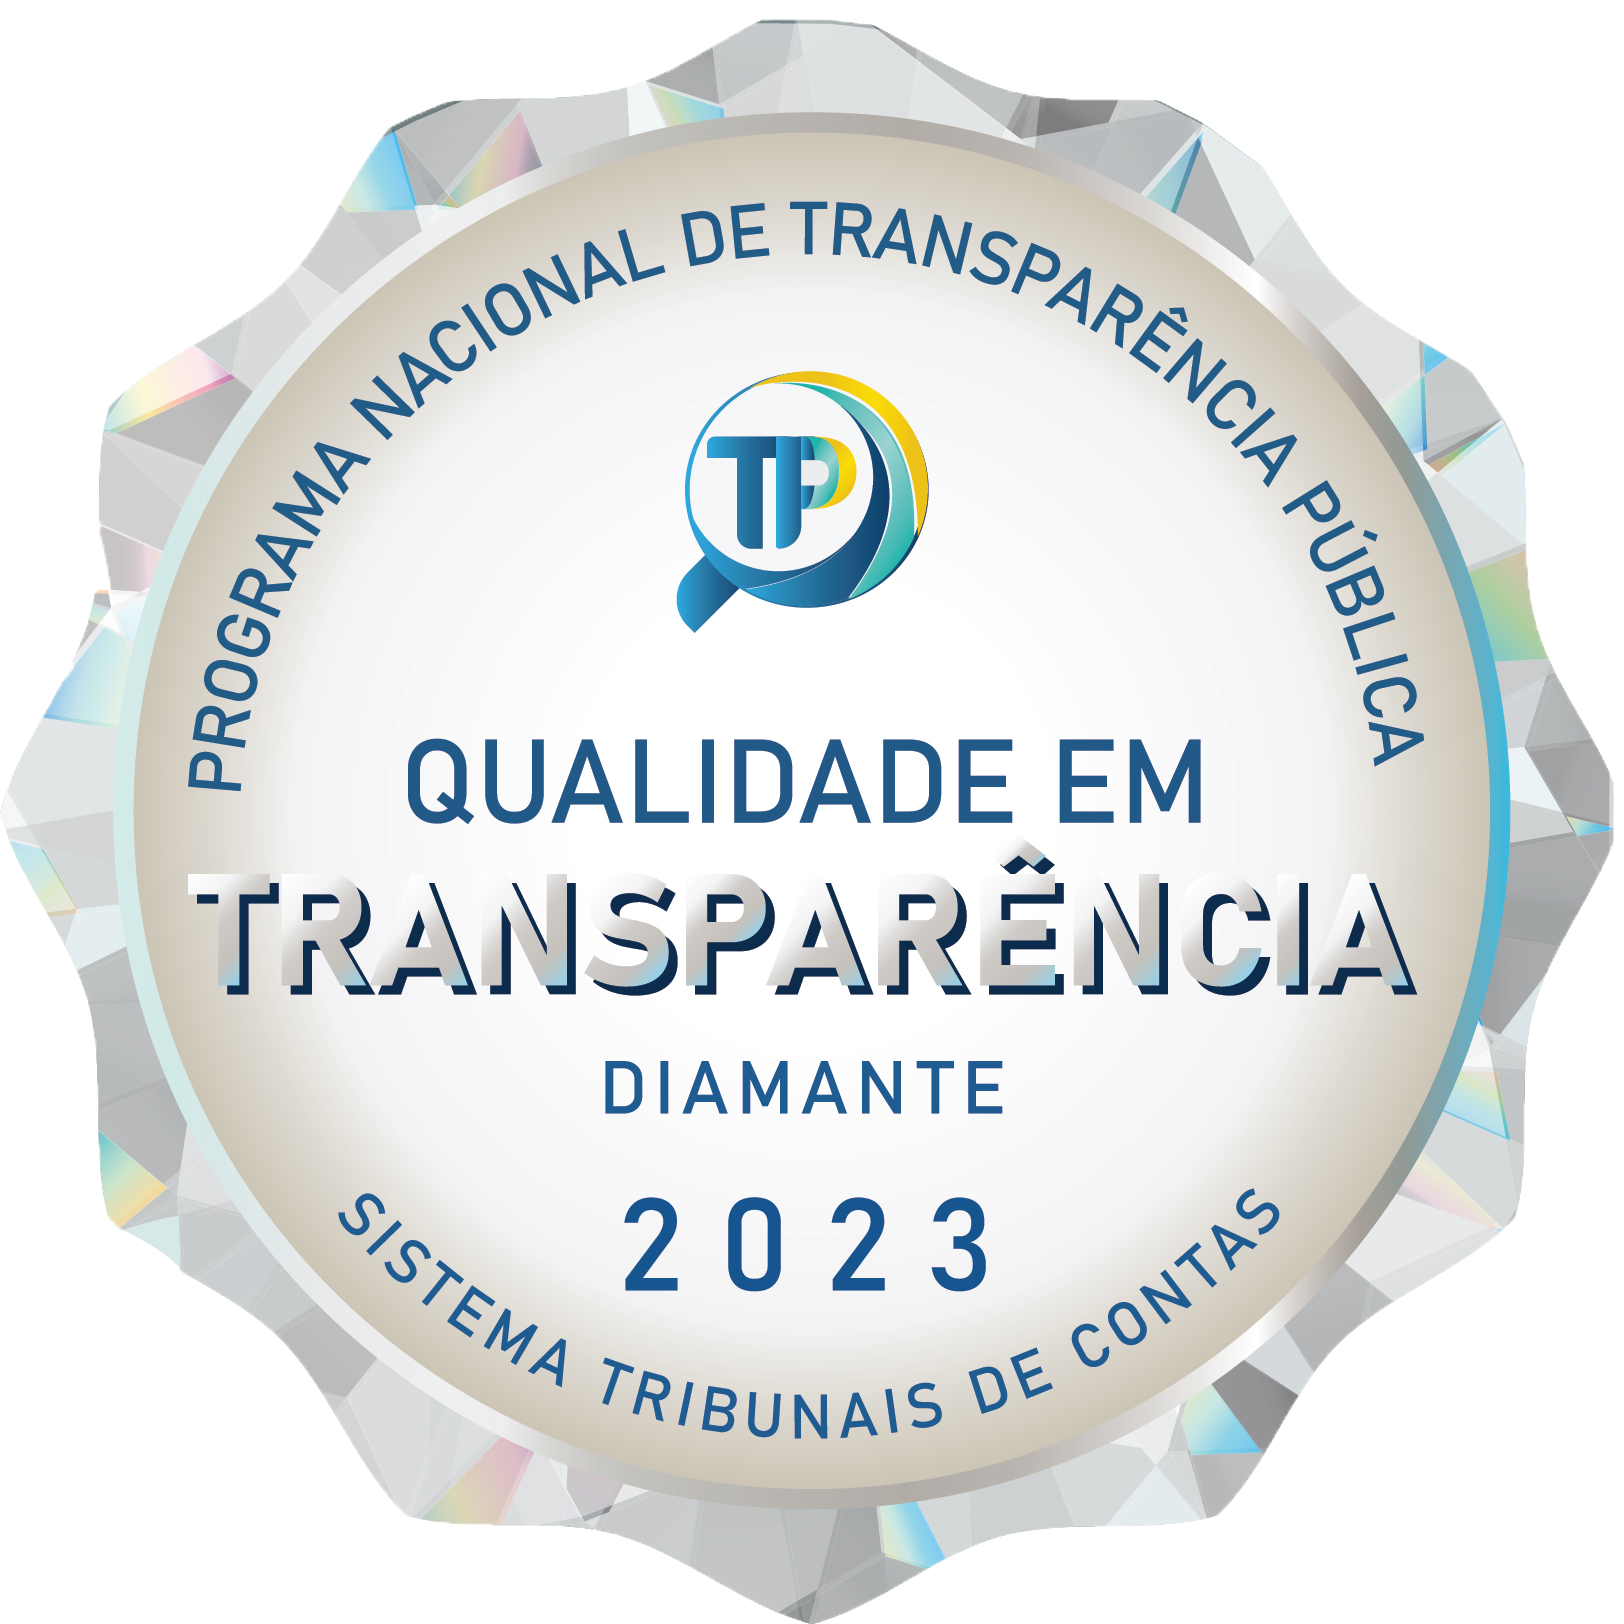 Qualidade em transparência - Diamante - 2023 - Programa Nacional de transparência Pública